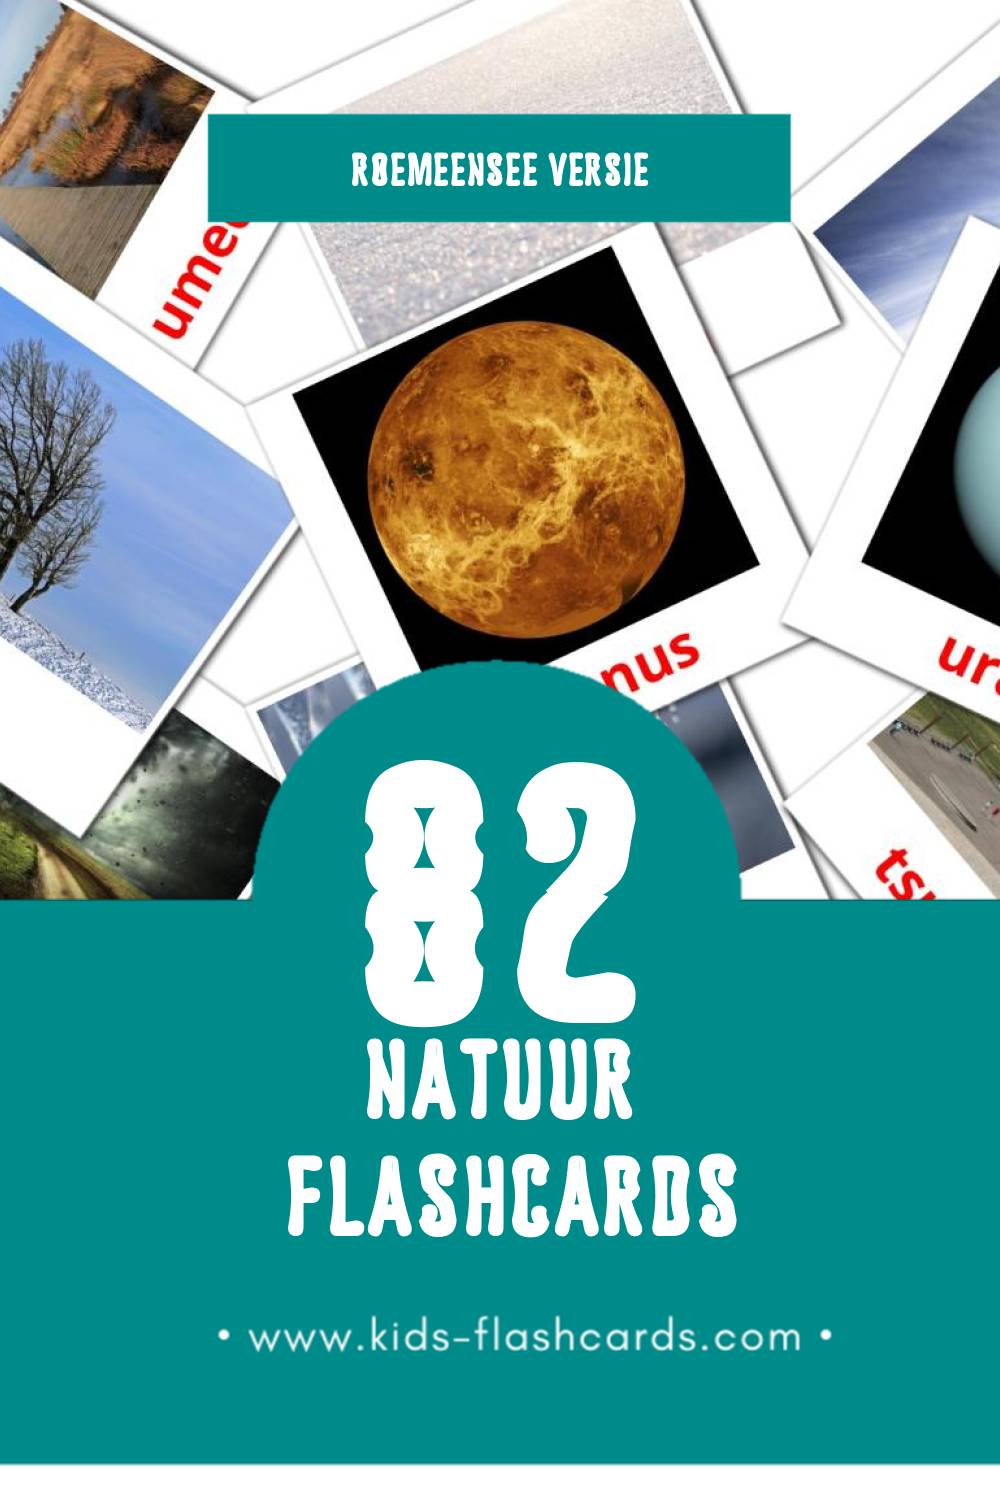 Visuele Natura Flashcards voor Kleuters (82 kaarten in het Roemeense)